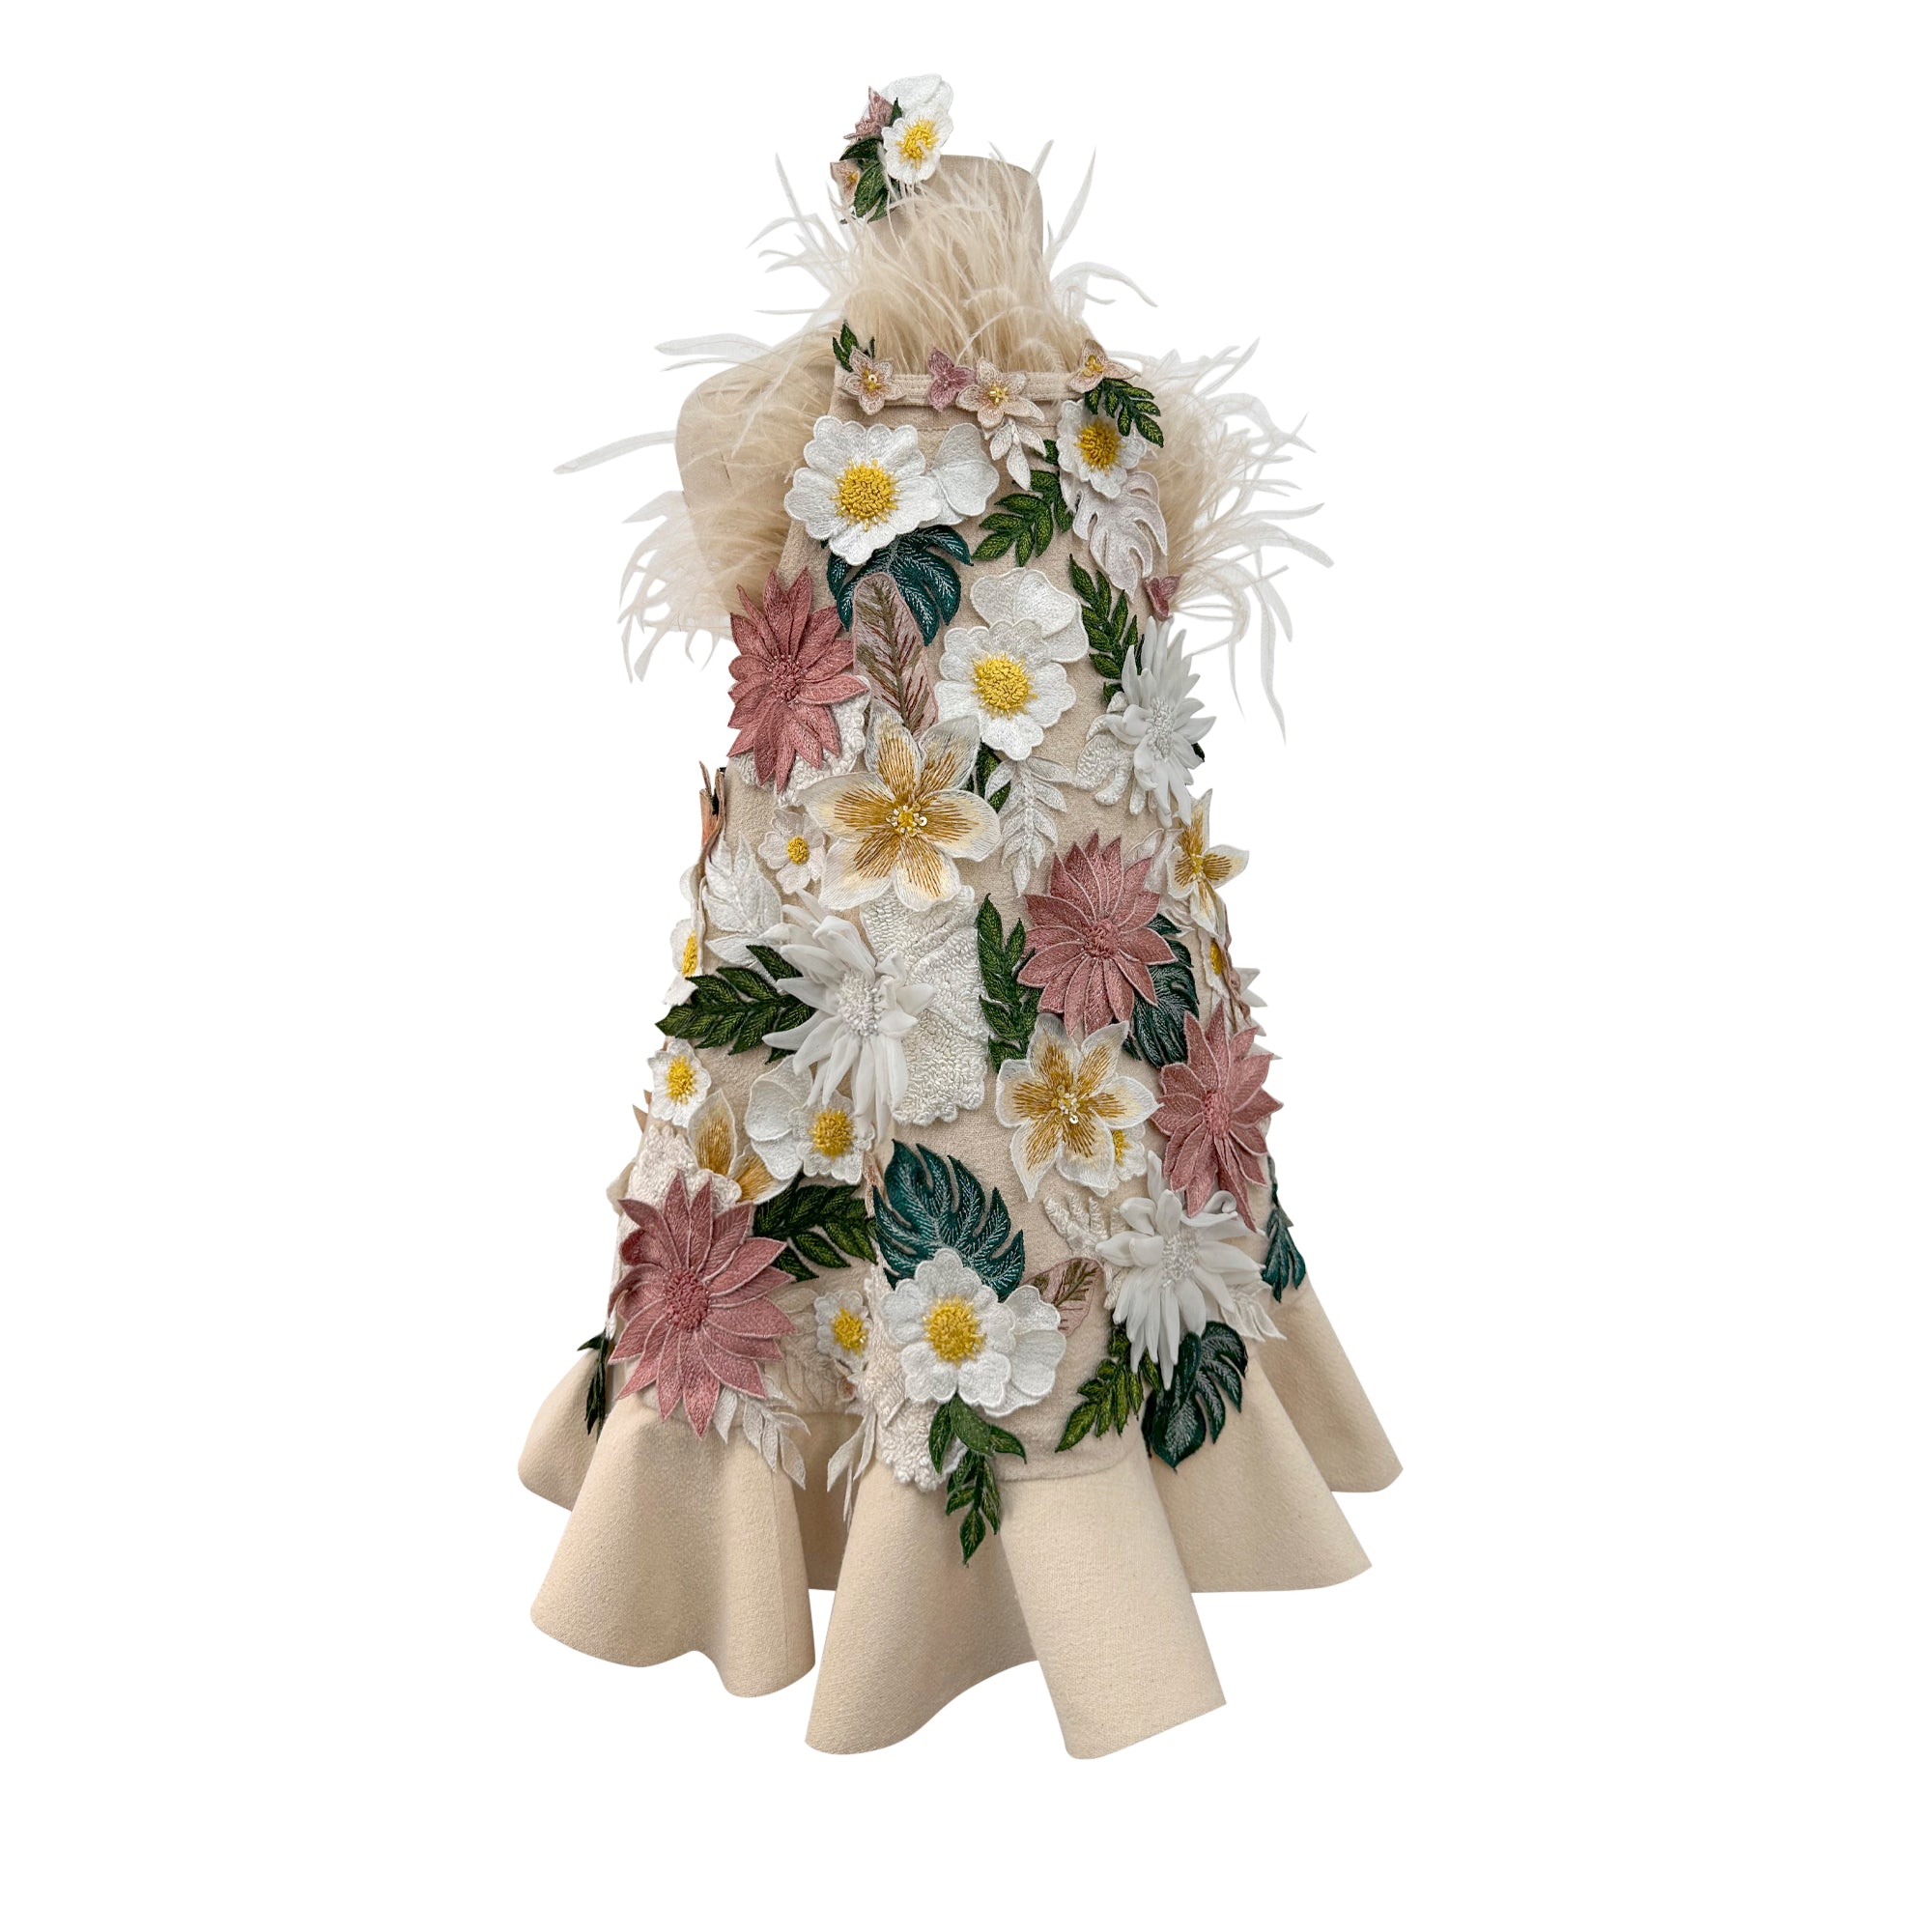 Floral Applique Dress with Detachable Feathers